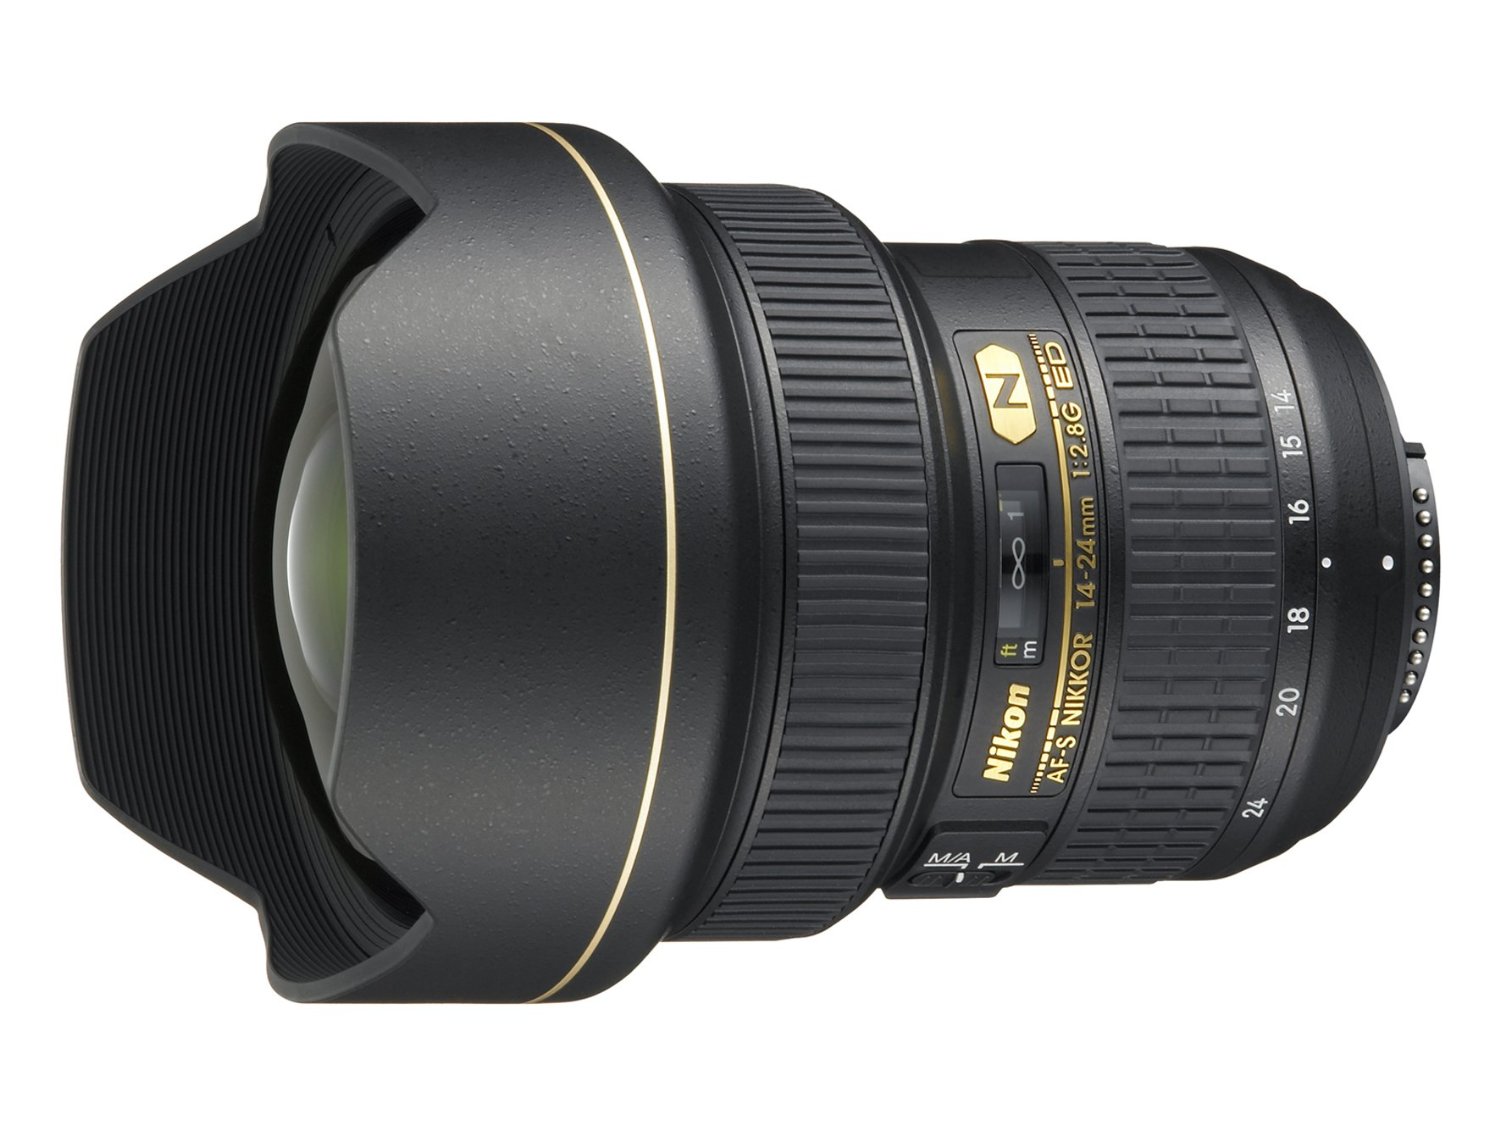 Nikon AF-S FX NIKKOR 14-24mm f / 2.8G ED عدسة تكبير مع تركيز تلقائي لكاميرات DSLR